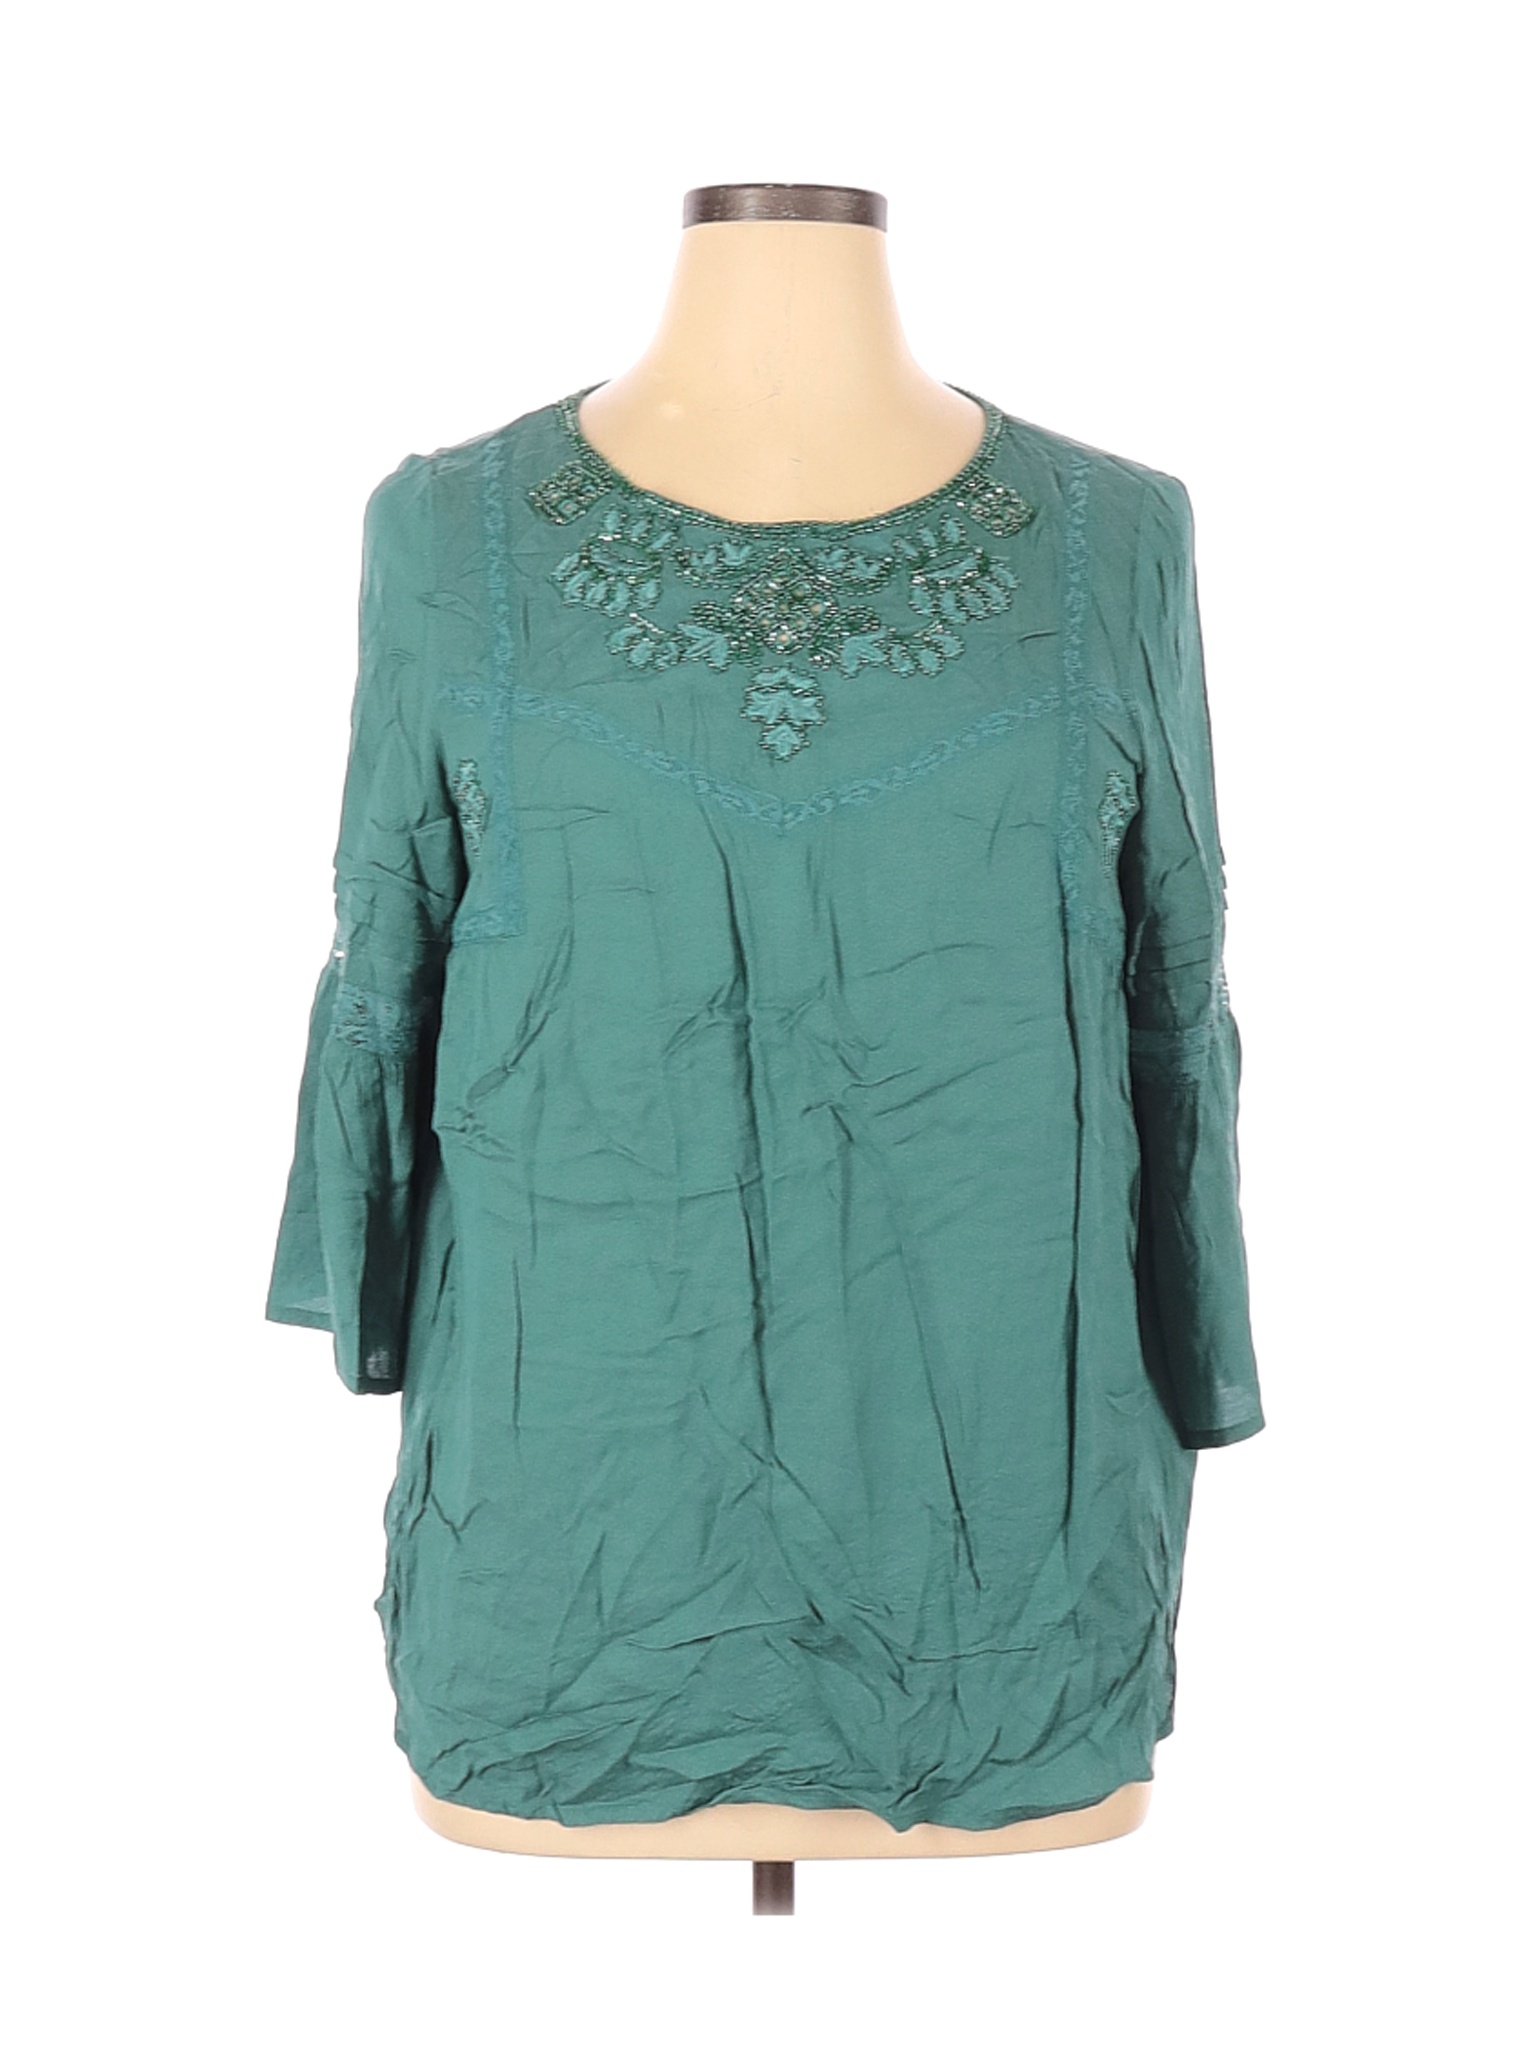 Monsoon Women Green Long Sleeve Blouse 16 | eBay